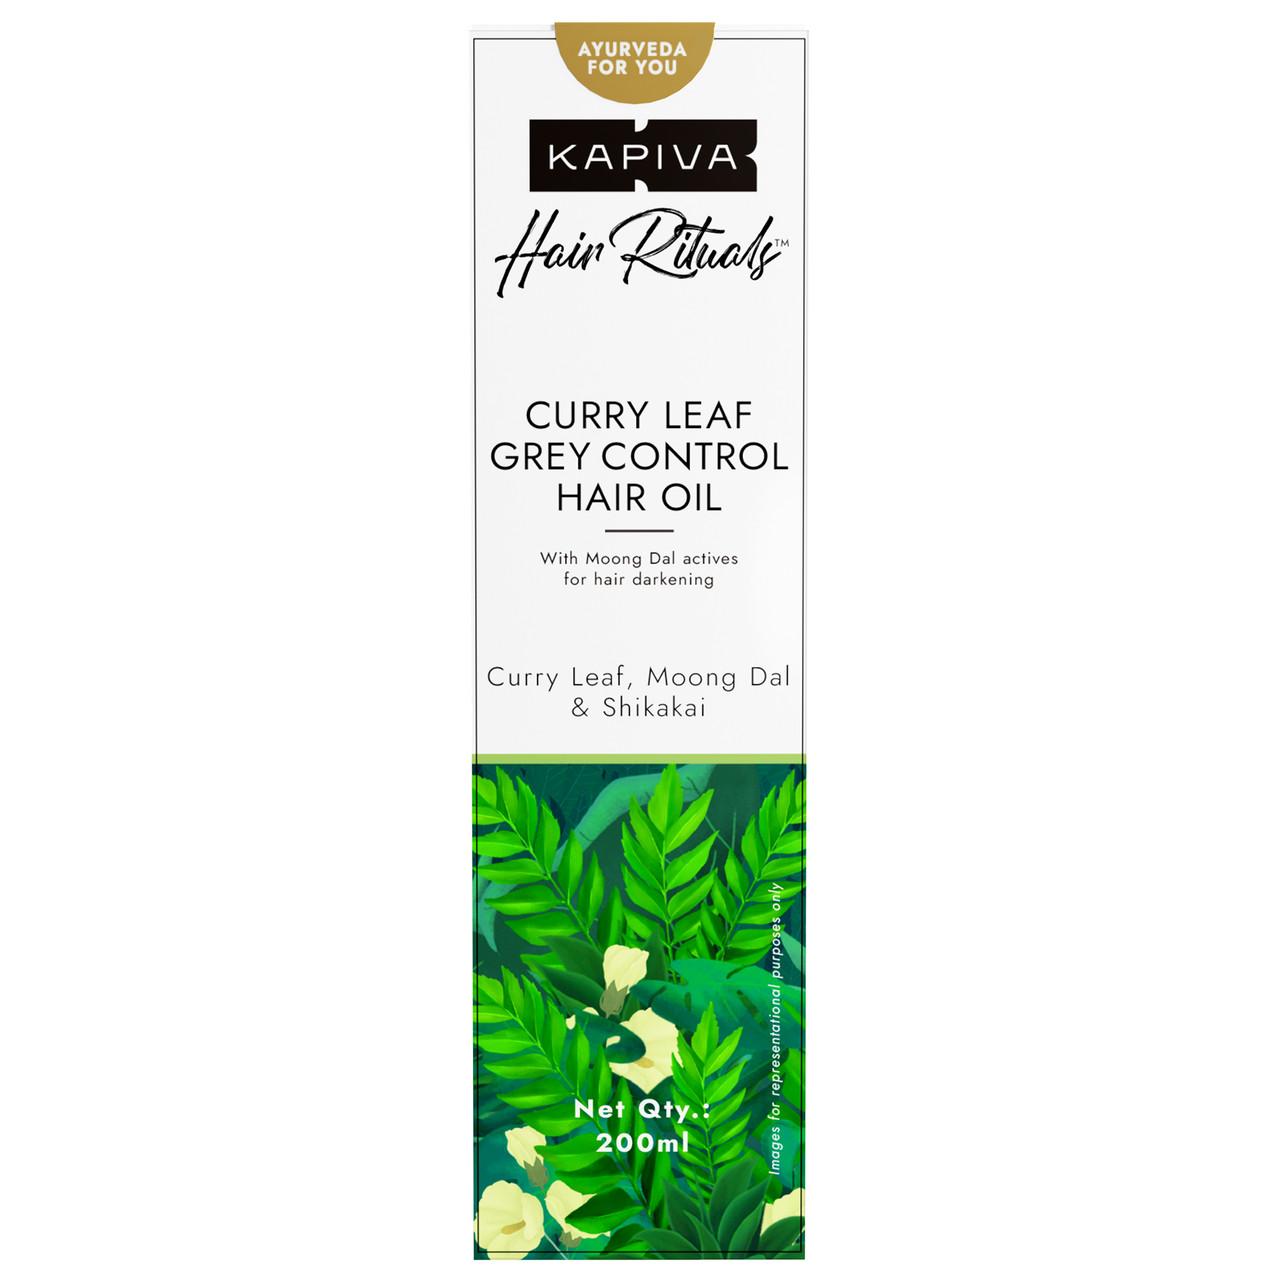 Curry Leaf Grey Control Hair Oil